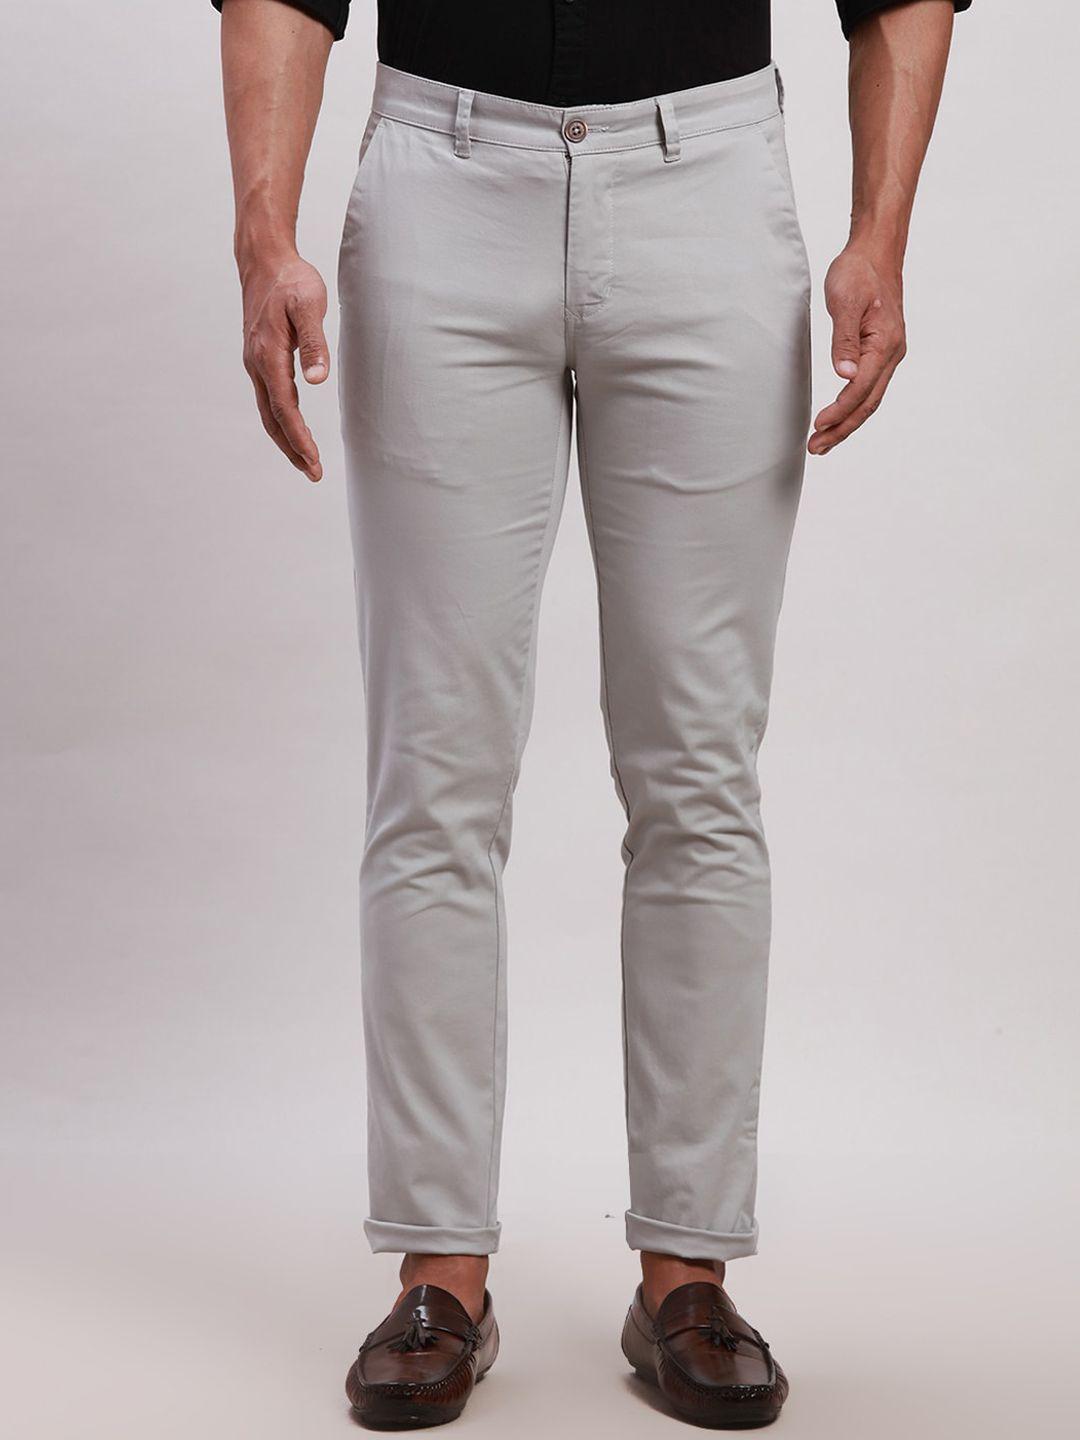 parx men slim fit mid-rise cotton casual trouser